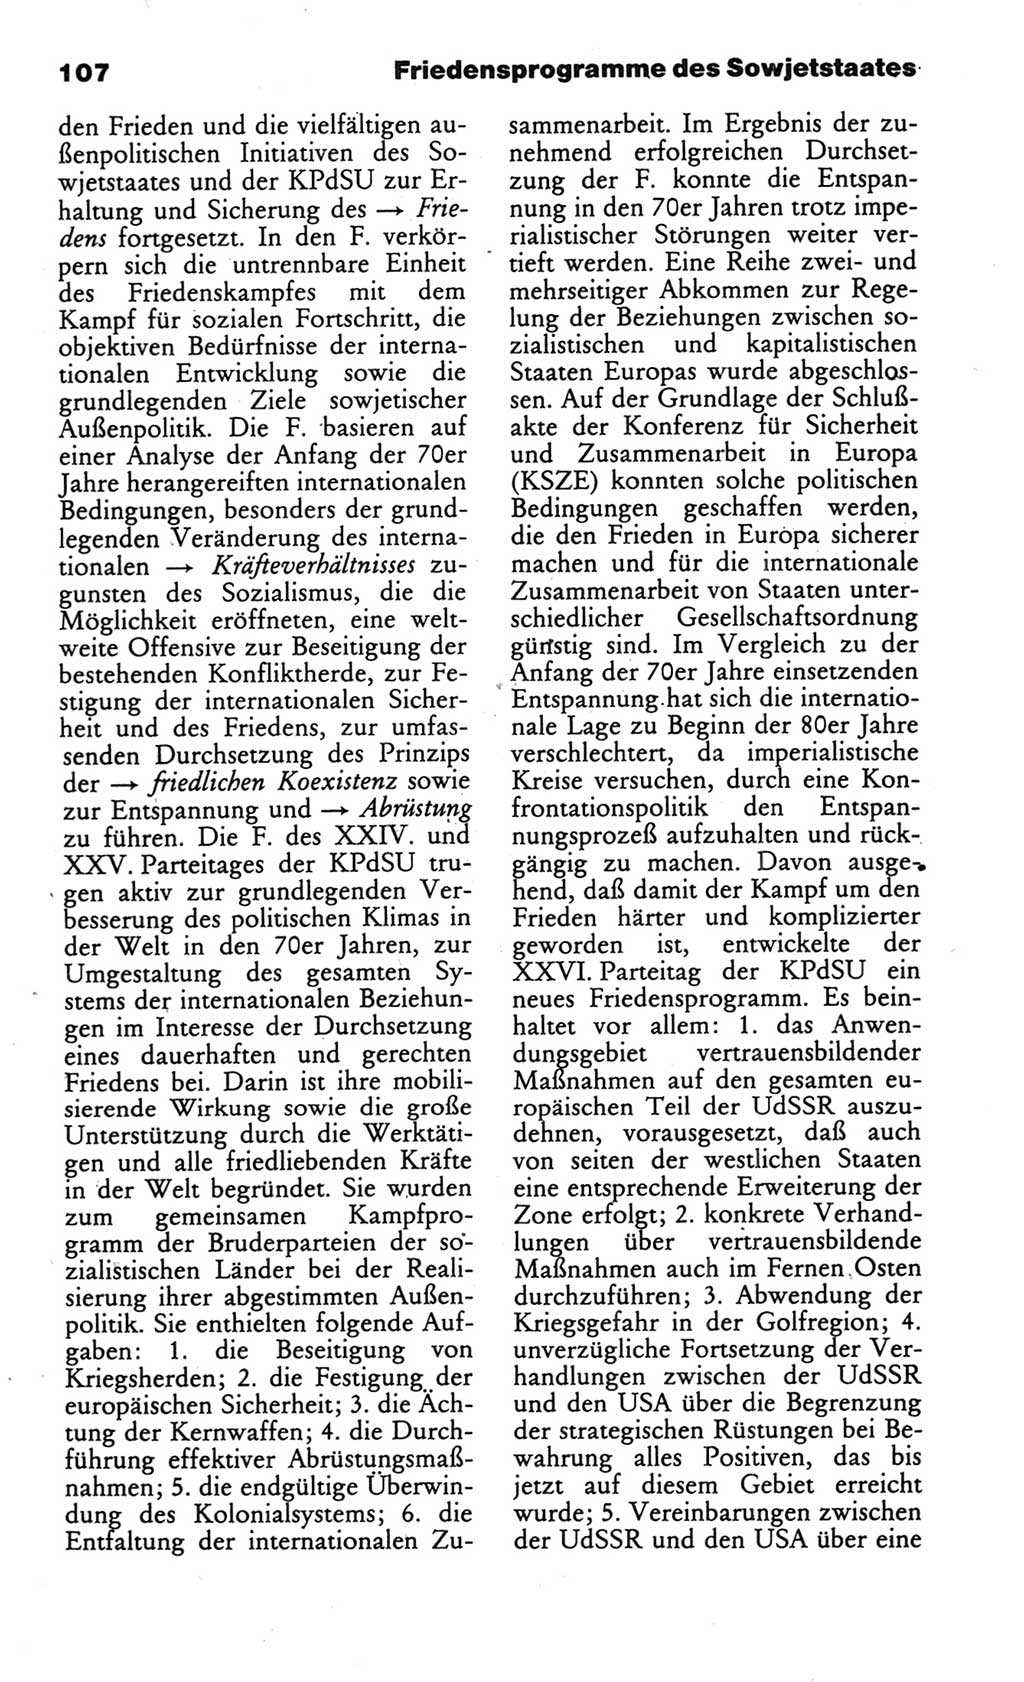 Wörterbuch des wissenschaftlichen Kommunismus [Deutsche Demokratische Republik (DDR)] 1986, Seite 107 (Wb. wiss. Komm. DDR 1986, S. 107)